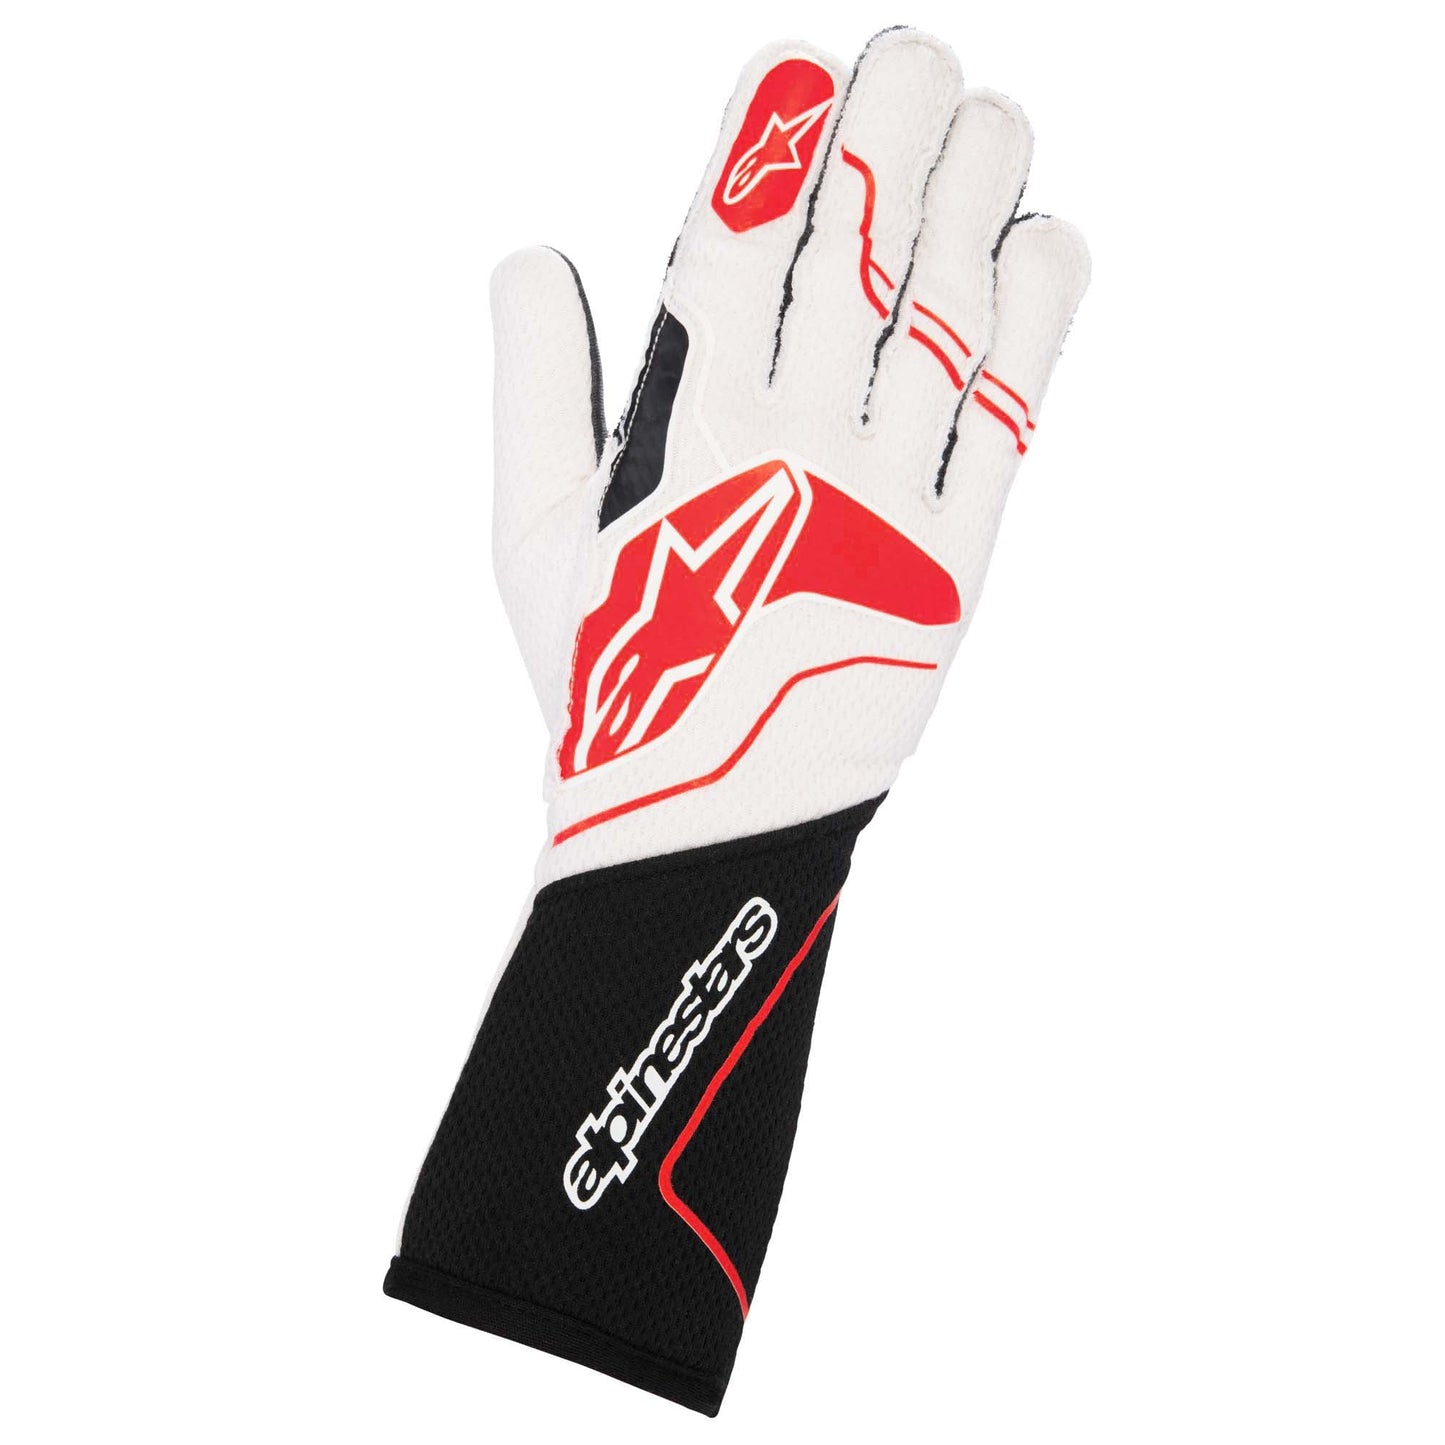 Alpinestars Tech-1 ZX v3 Racing Gloves